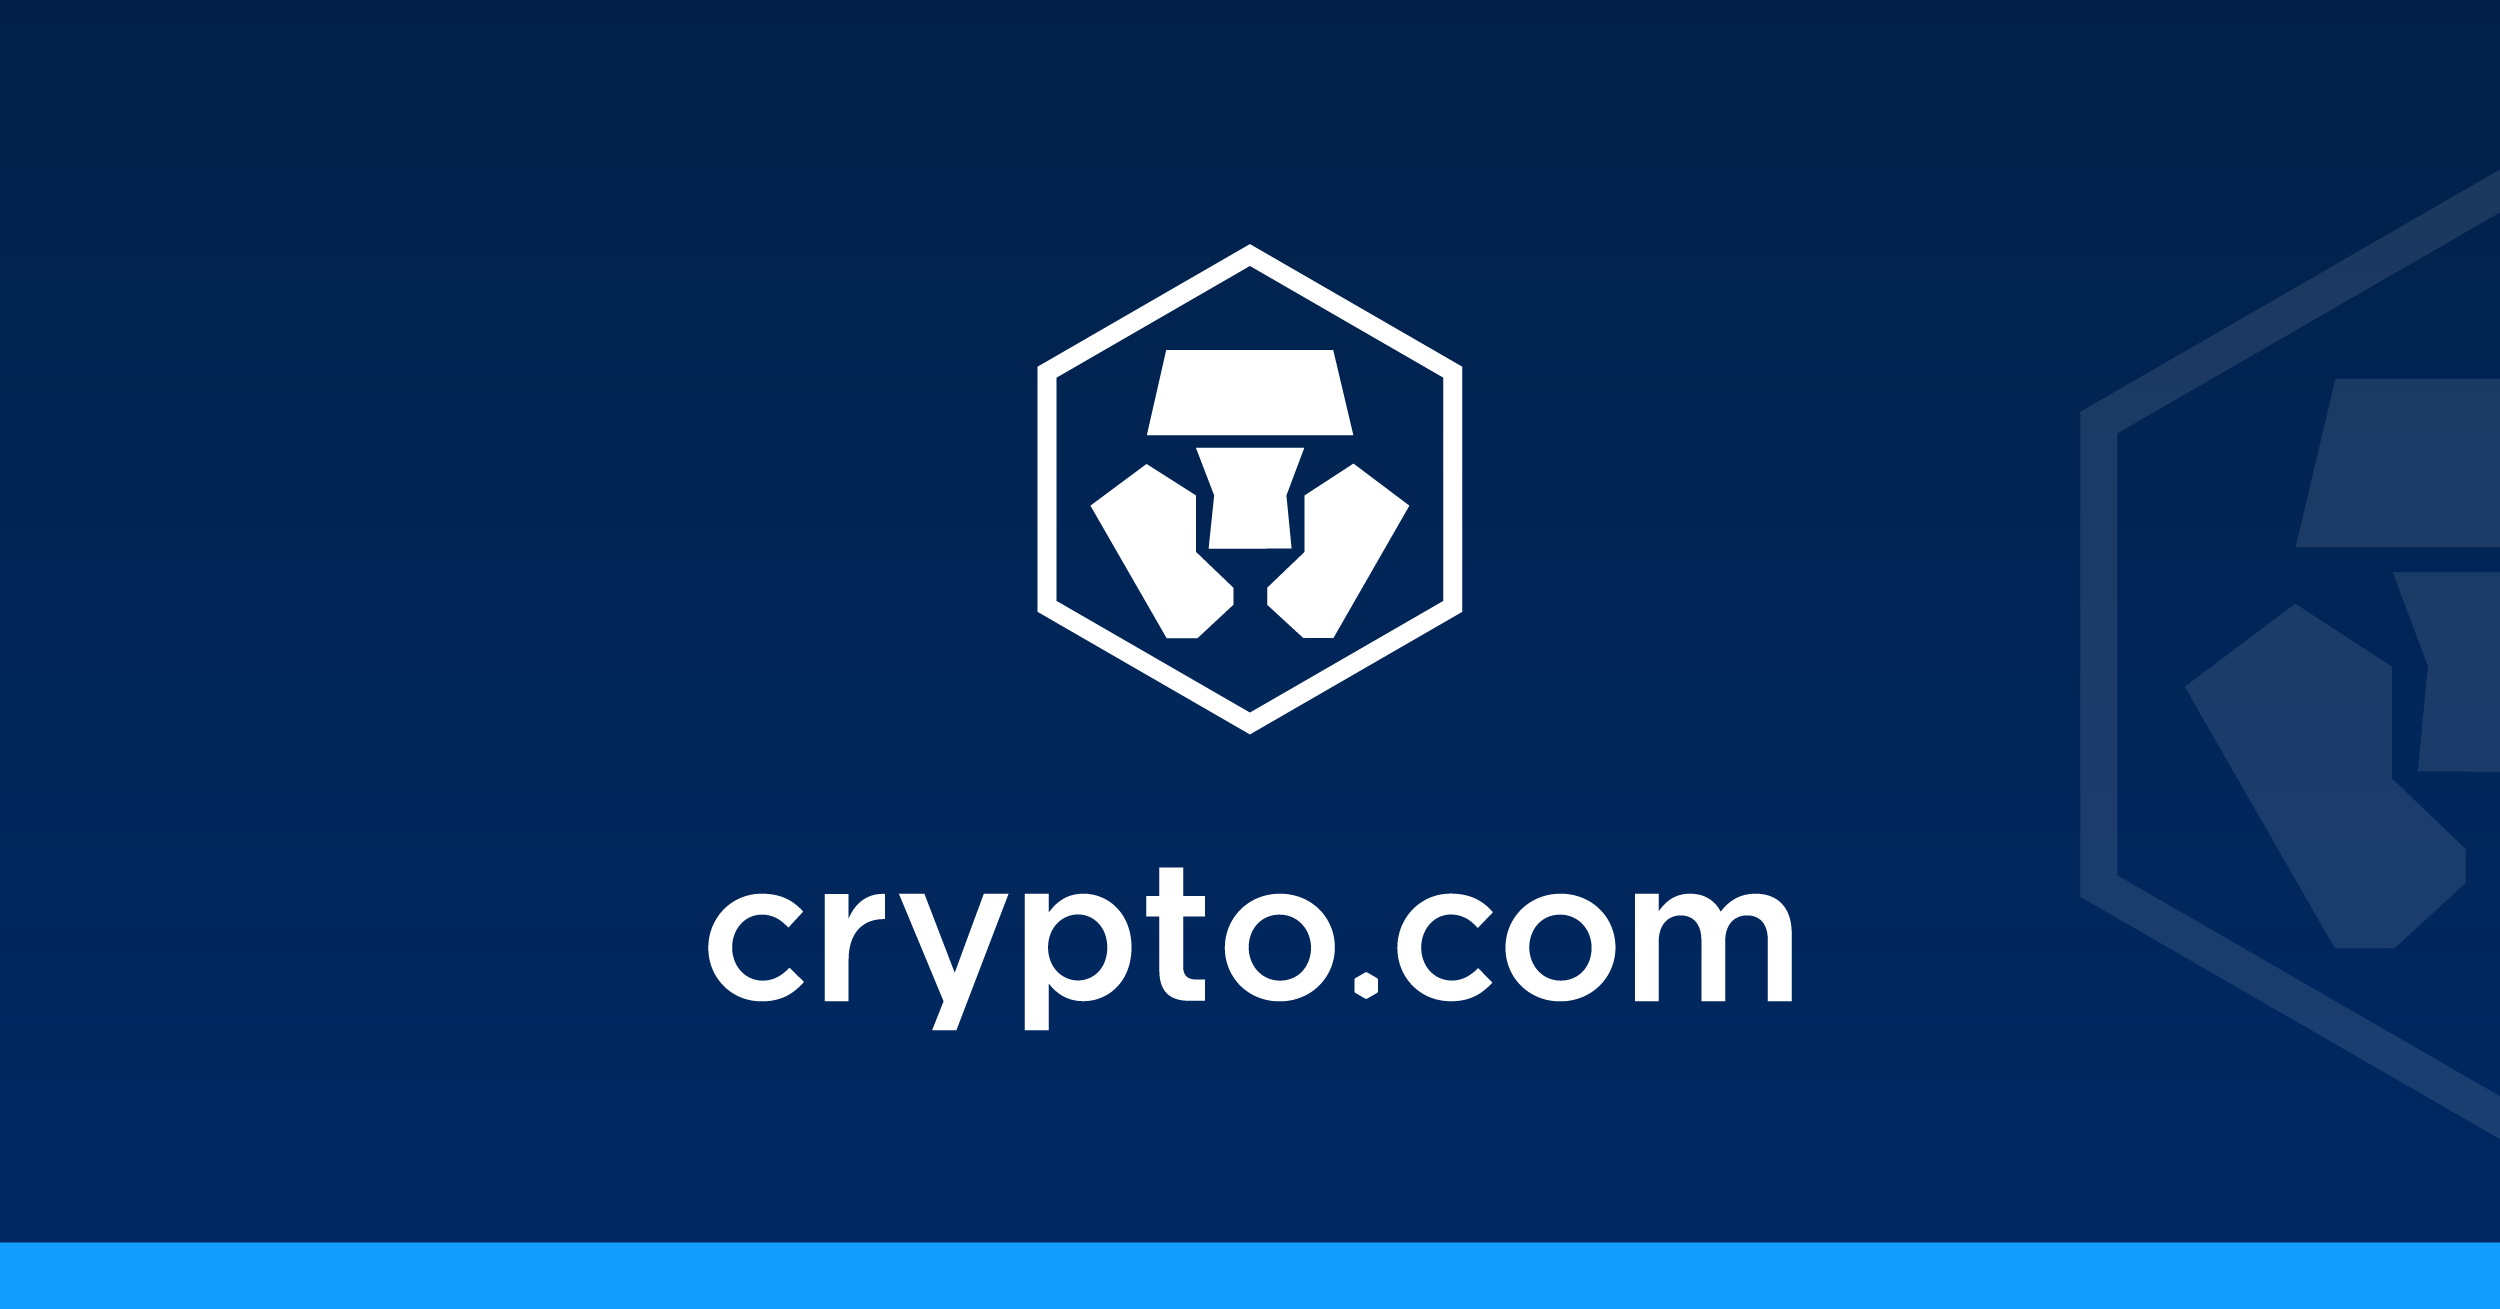 Crypto.com – Erfahrungen mit der Krypto App + 25 Dollar Startkapital